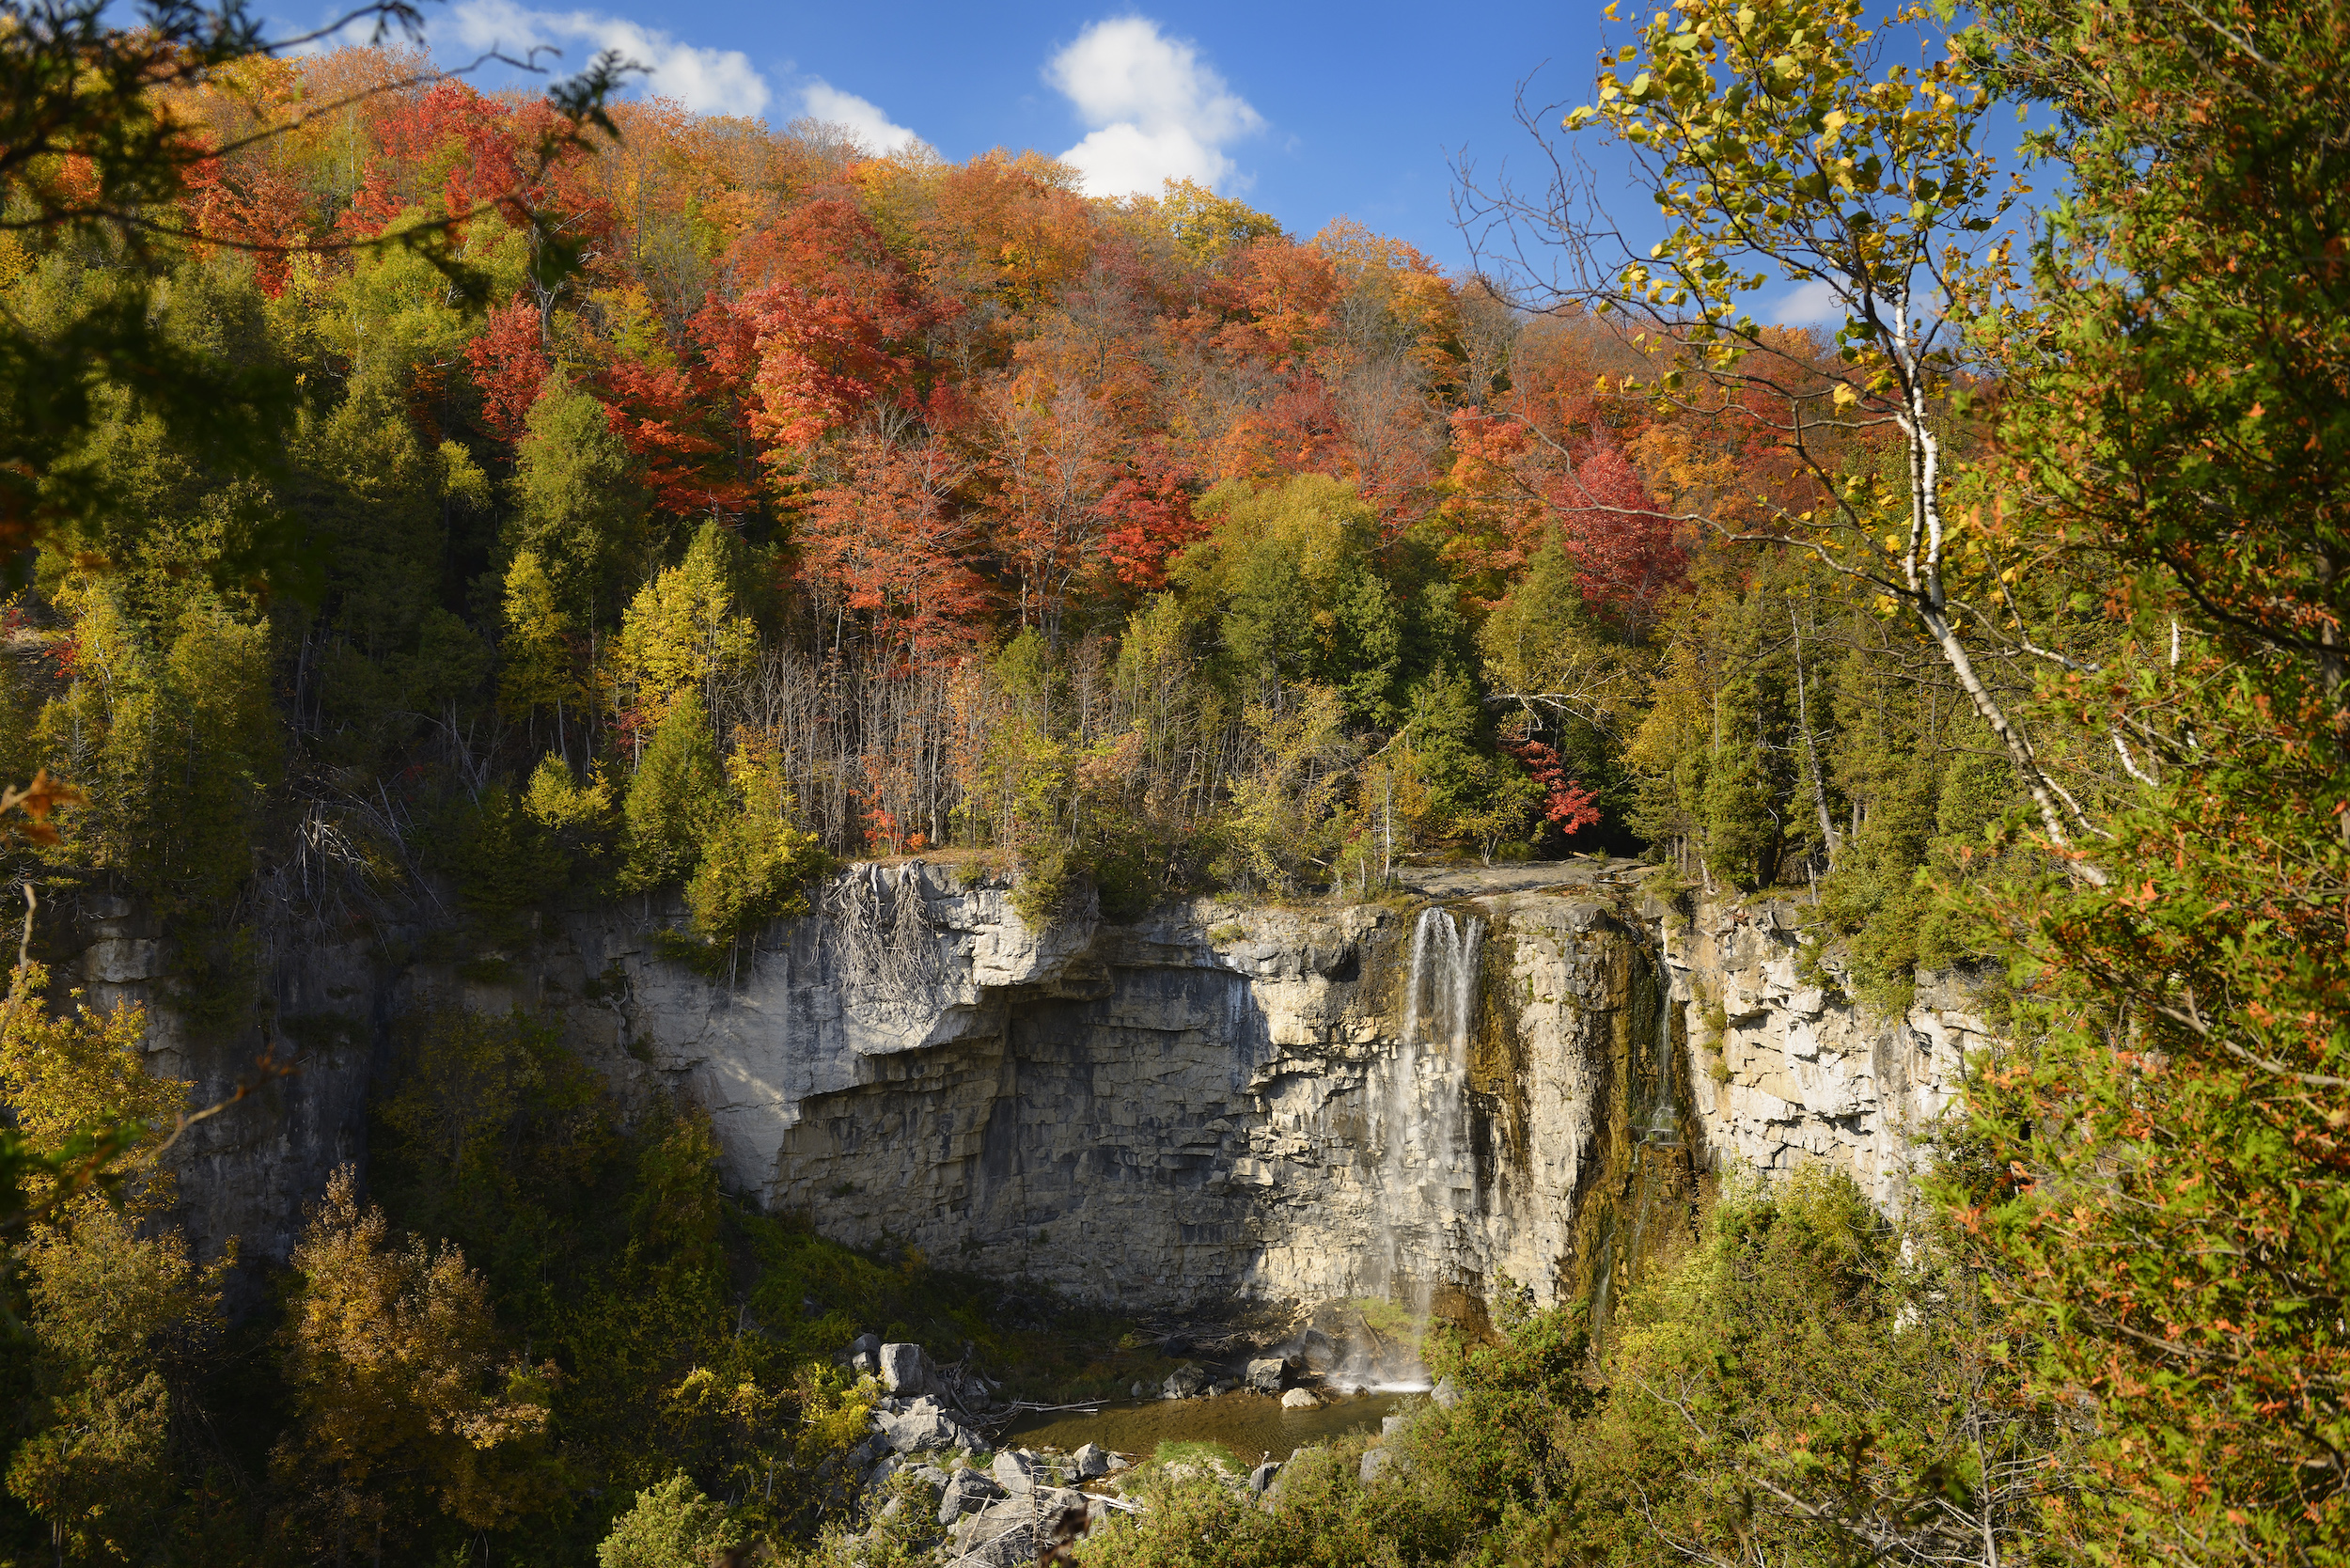 Eugenia Falls on the Beaver River in Ontario's Niagara Escarpment.